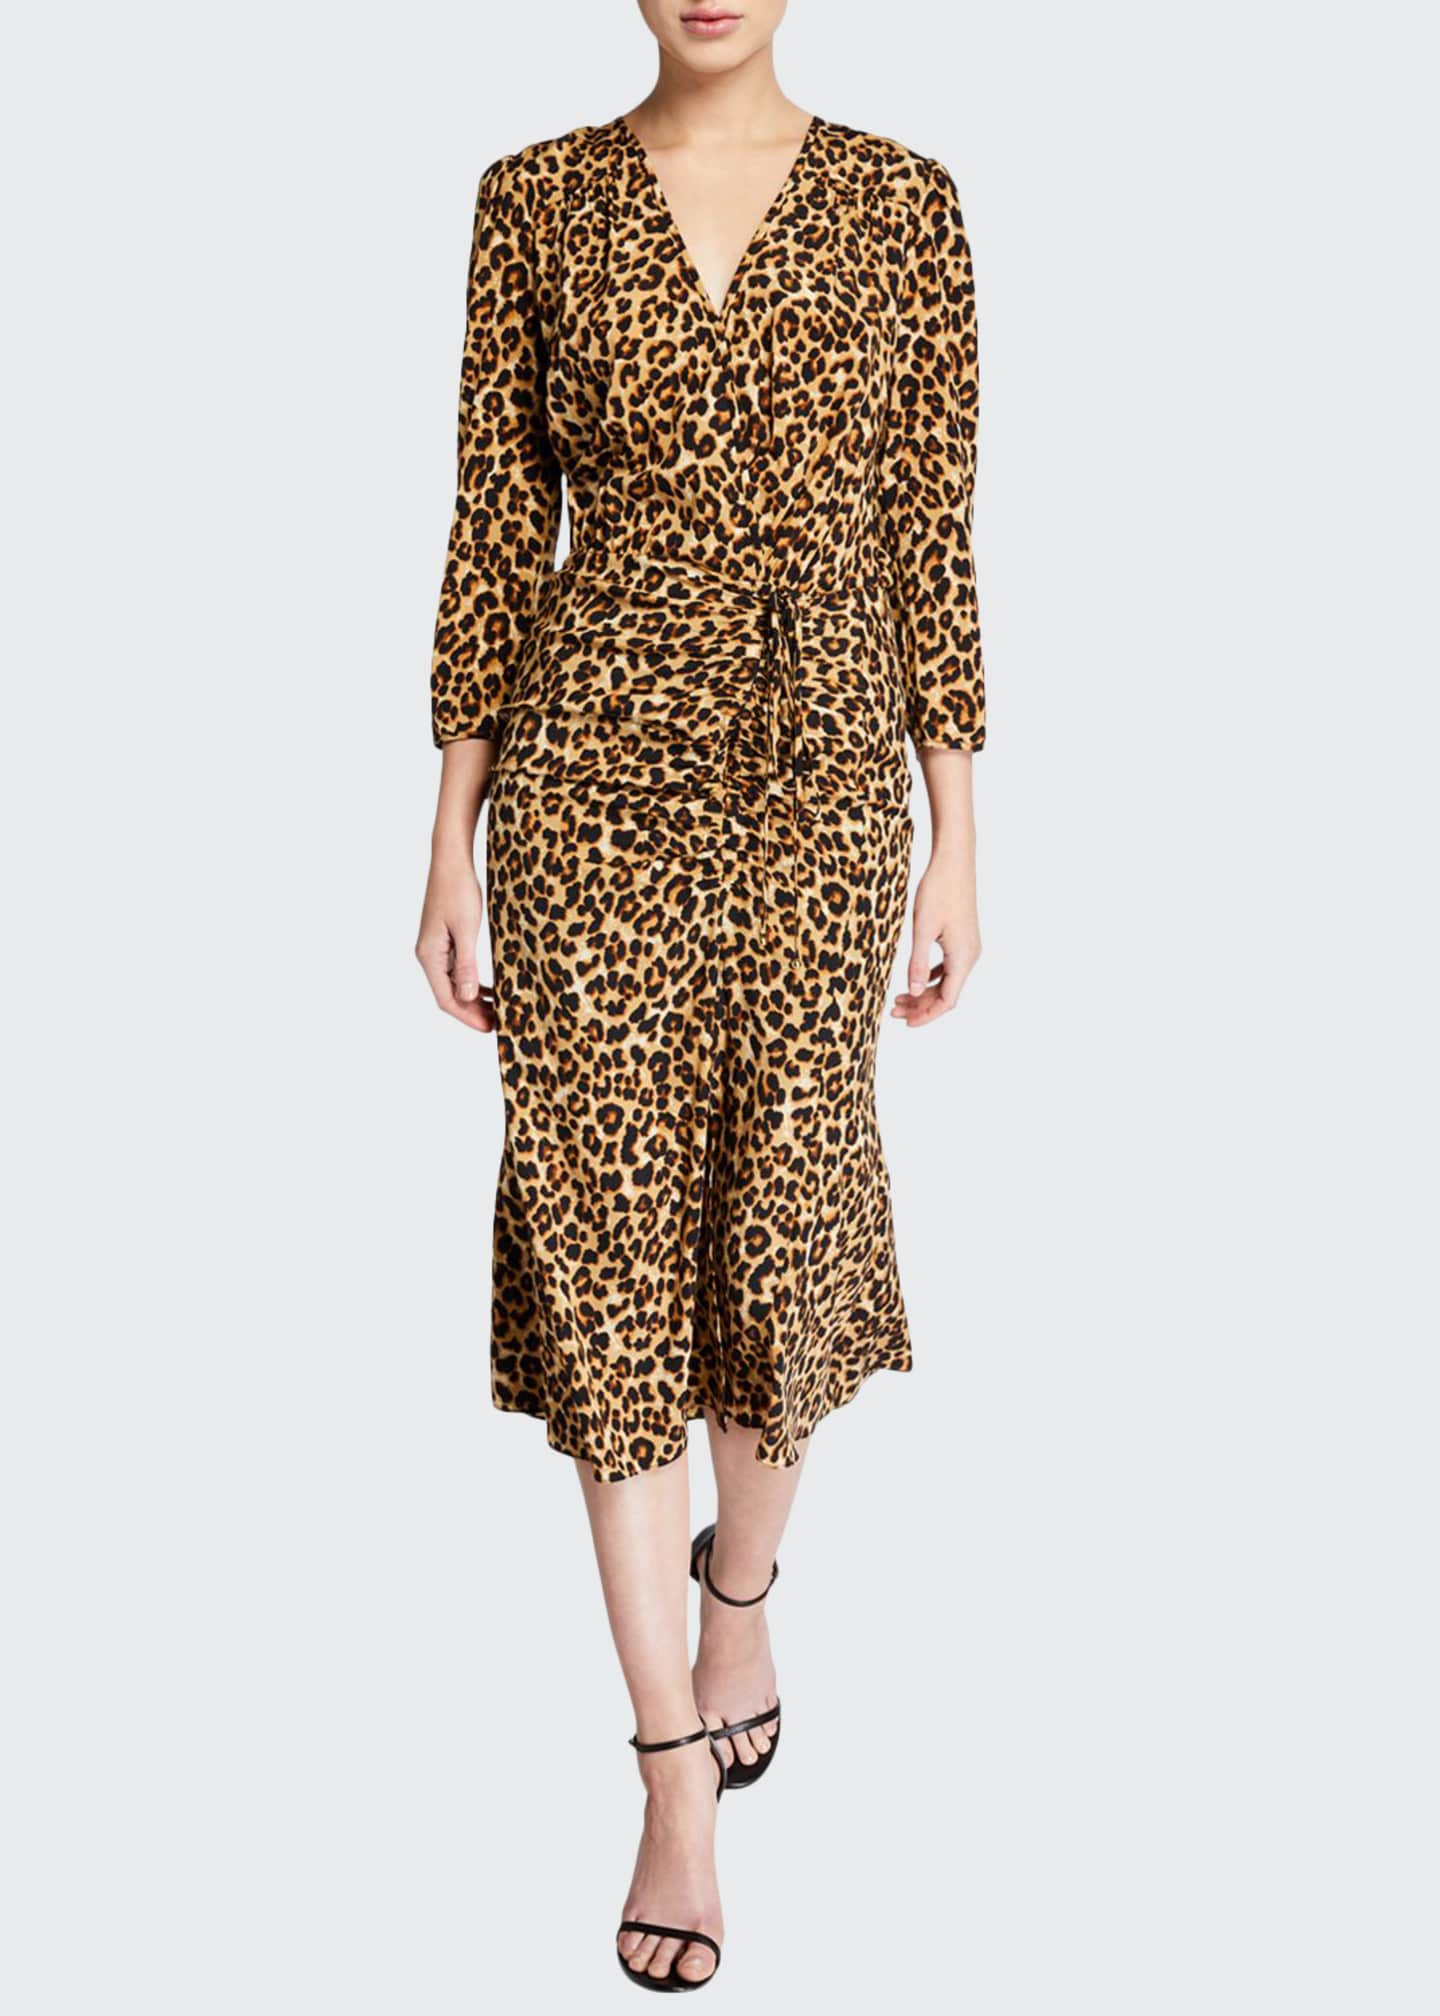 Veronica Beard Arielle Leopard-Print V-Neck Dress - Bergdorf Goodman